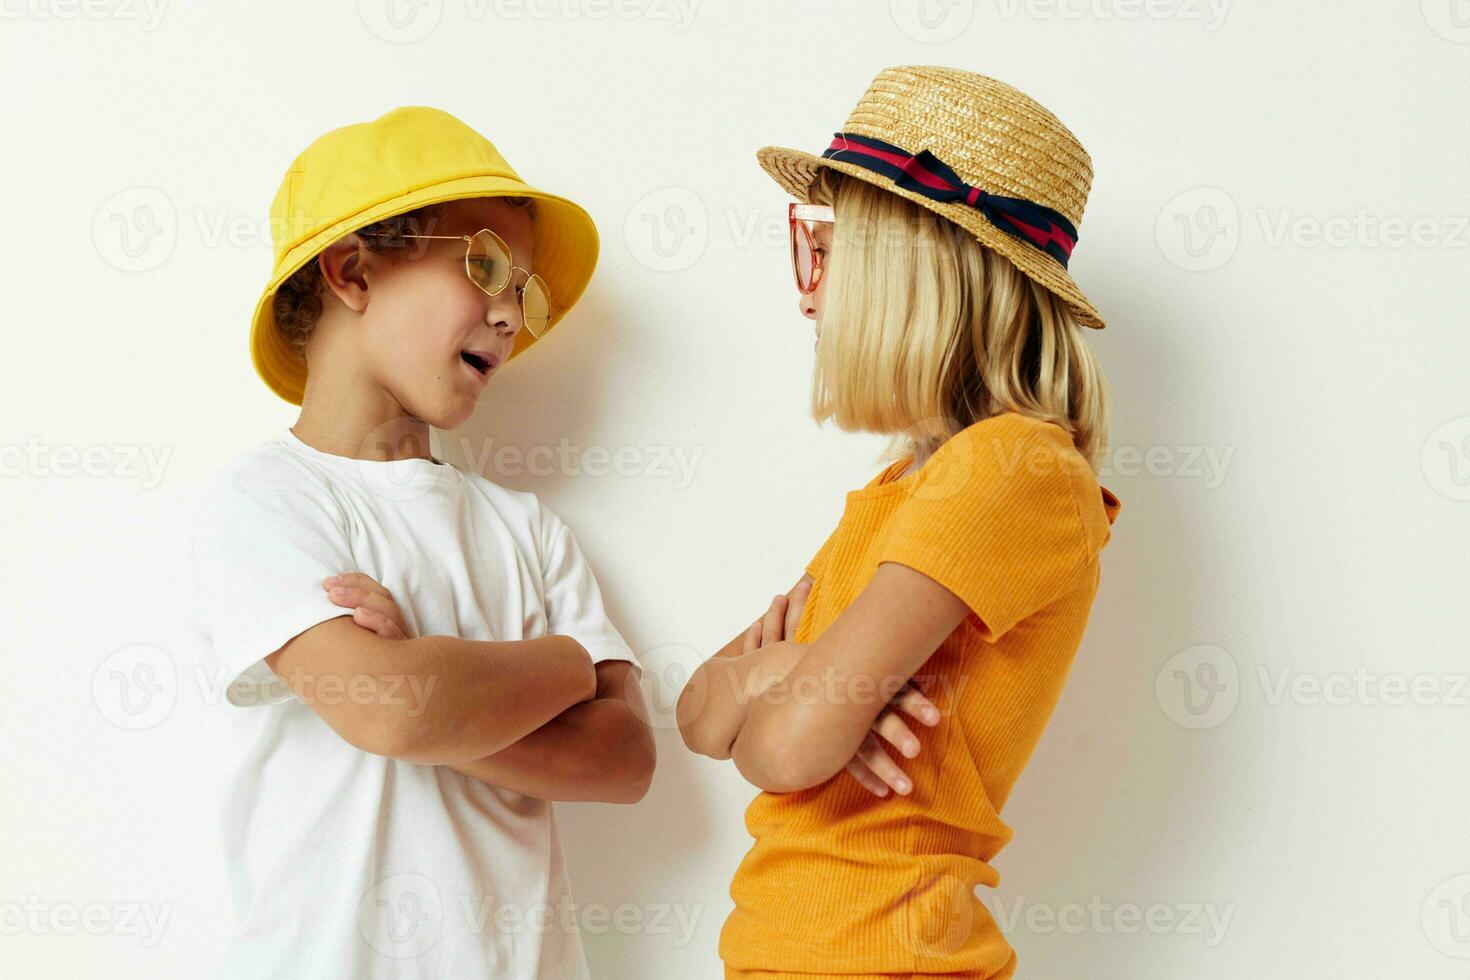 chico y niña vistiendo sombreros Moda lentes posando amistad divertido foto